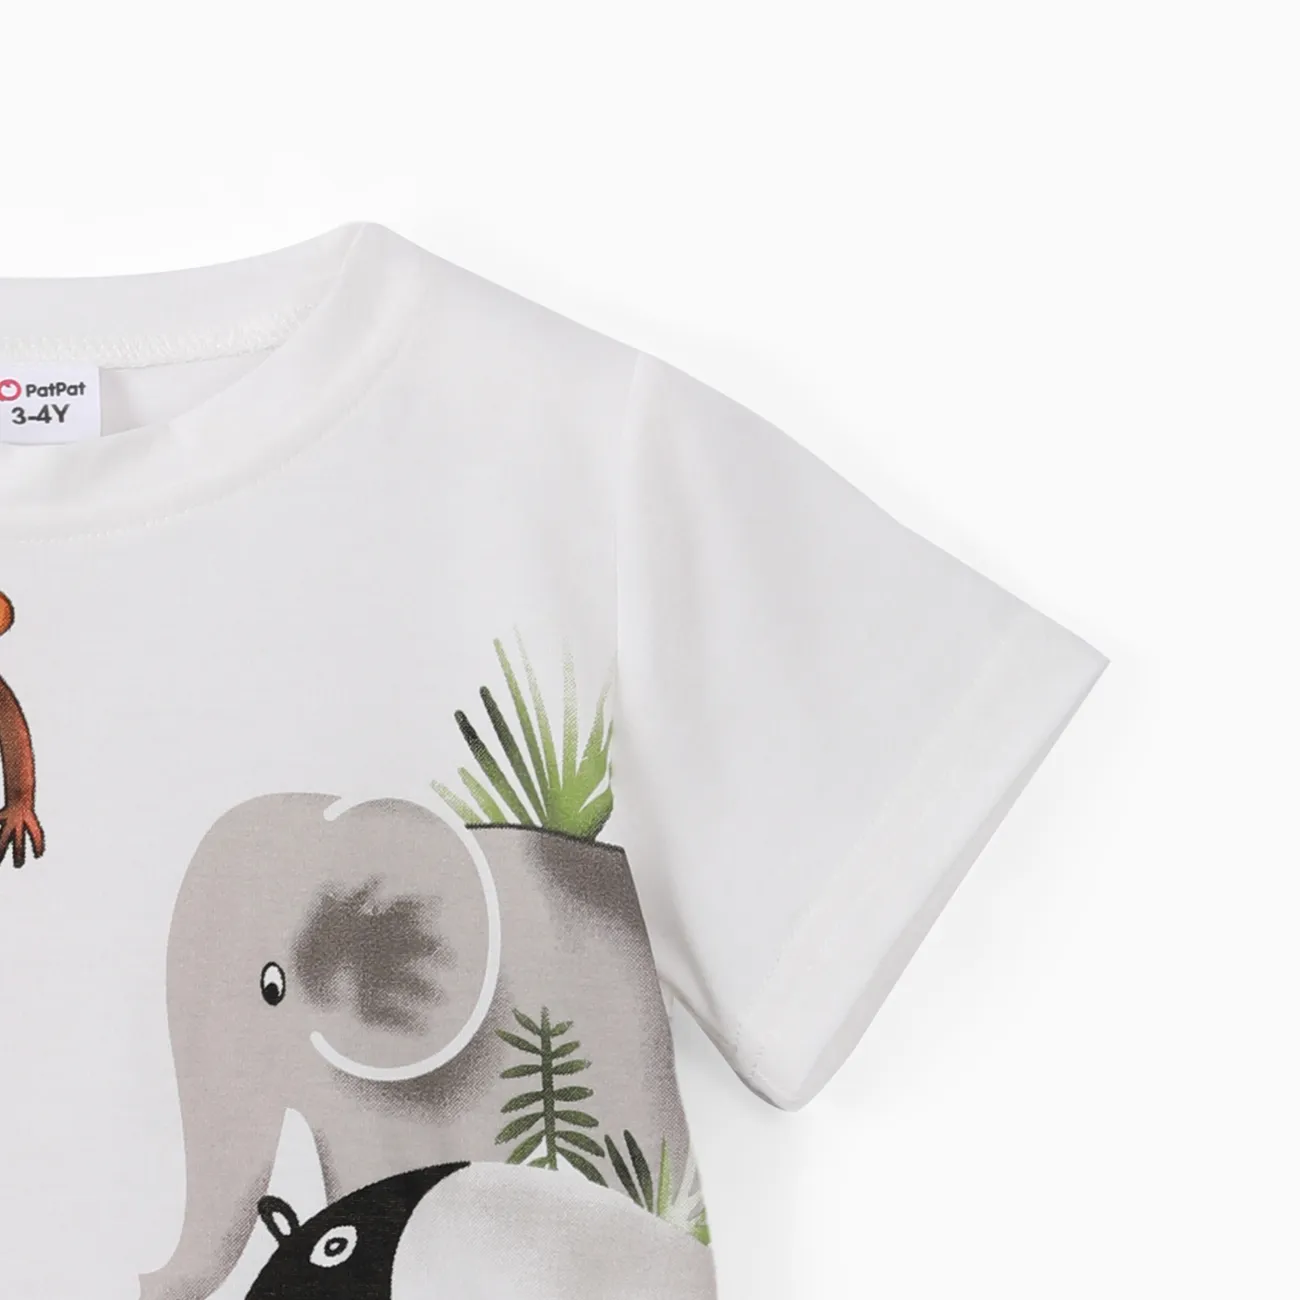 2 Stück Kleinkinder Jungen Kindlich Tiere T-Shirt-Sets weiß big image 1